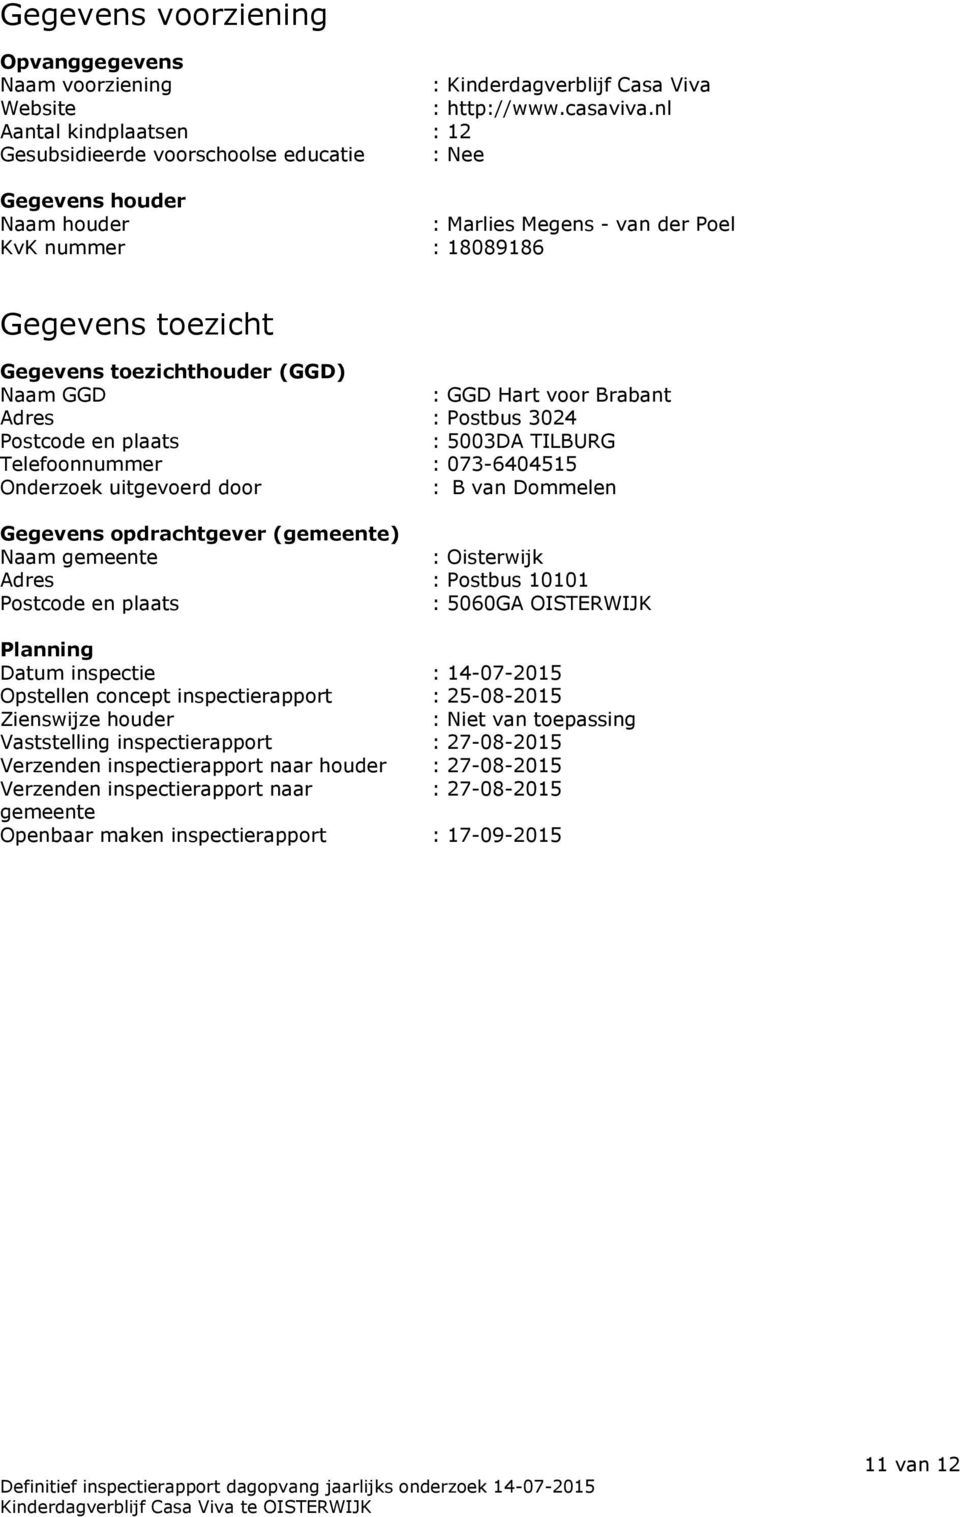 (GGD) Naam GGD : GGD Hart voor Brabant Adres : Postbus 3024 Postcode en plaats : 5003DA TILBURG Telefoonnummer : 073-6404515 Onderzoek uitgevoerd door : B van Dommelen Gegevens opdrachtgever